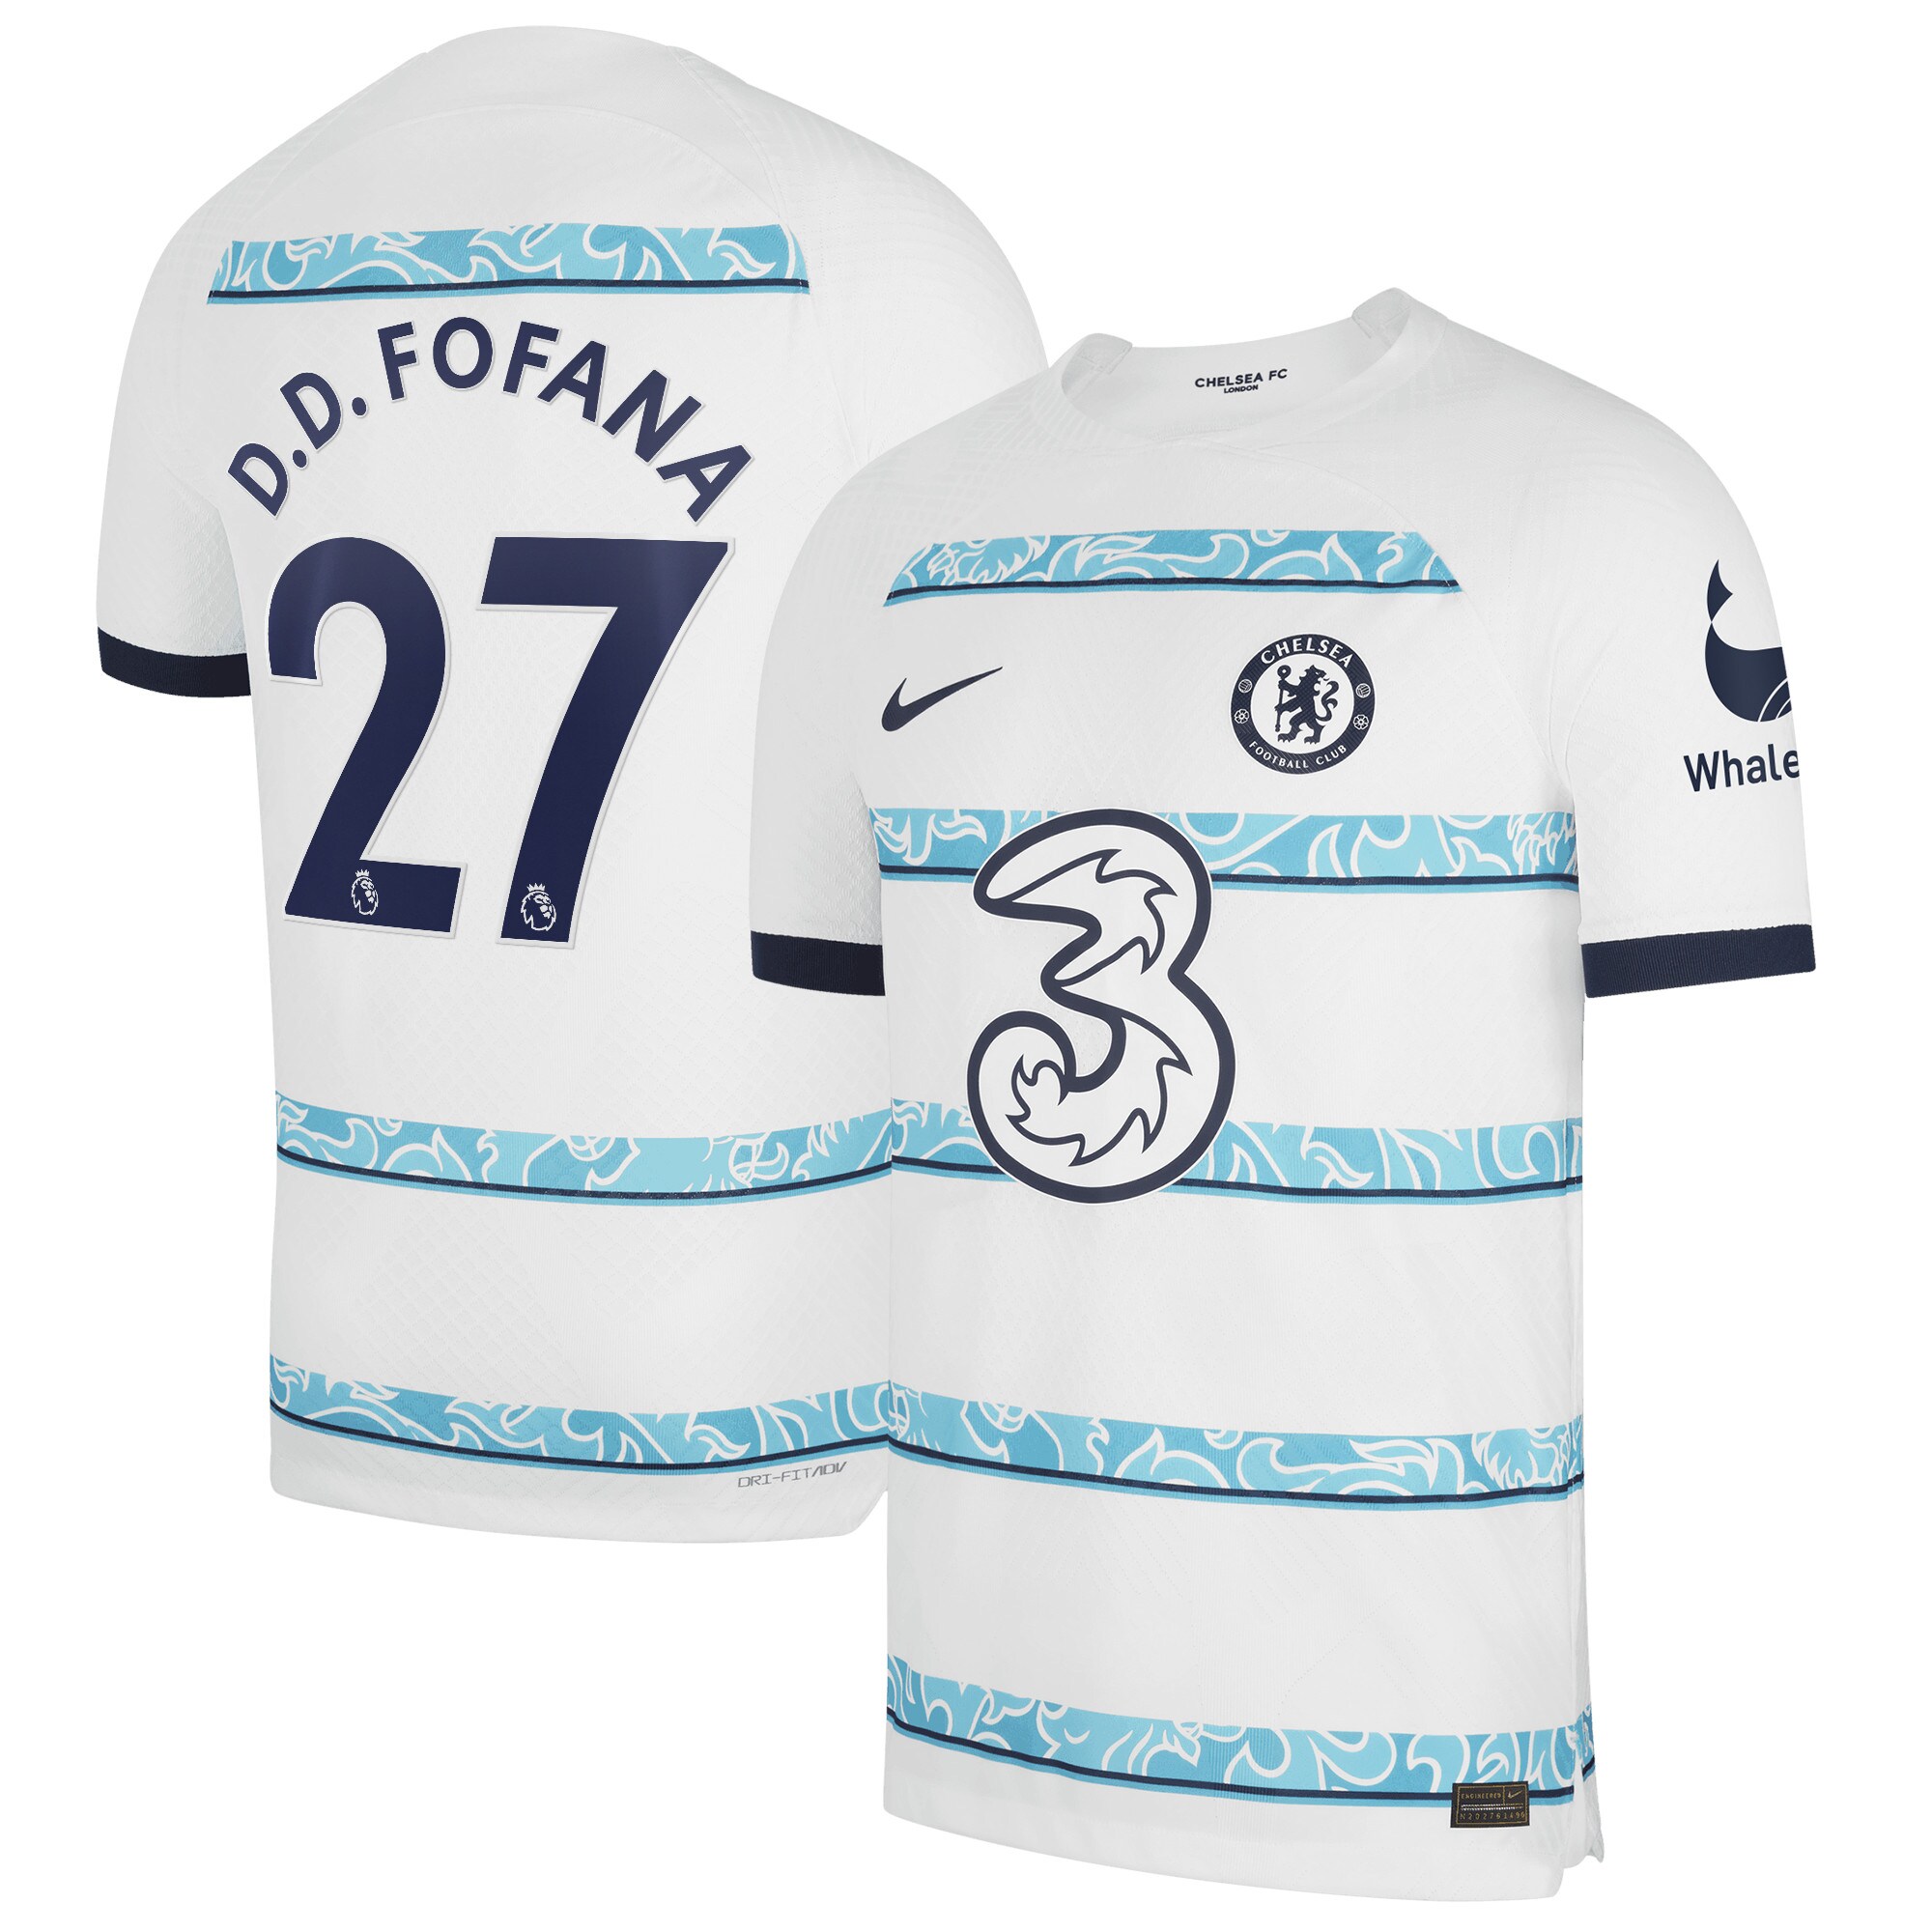 Chelsea Away Vapor Match Shirt 2022-23 with D.D.Fofana 27 printing